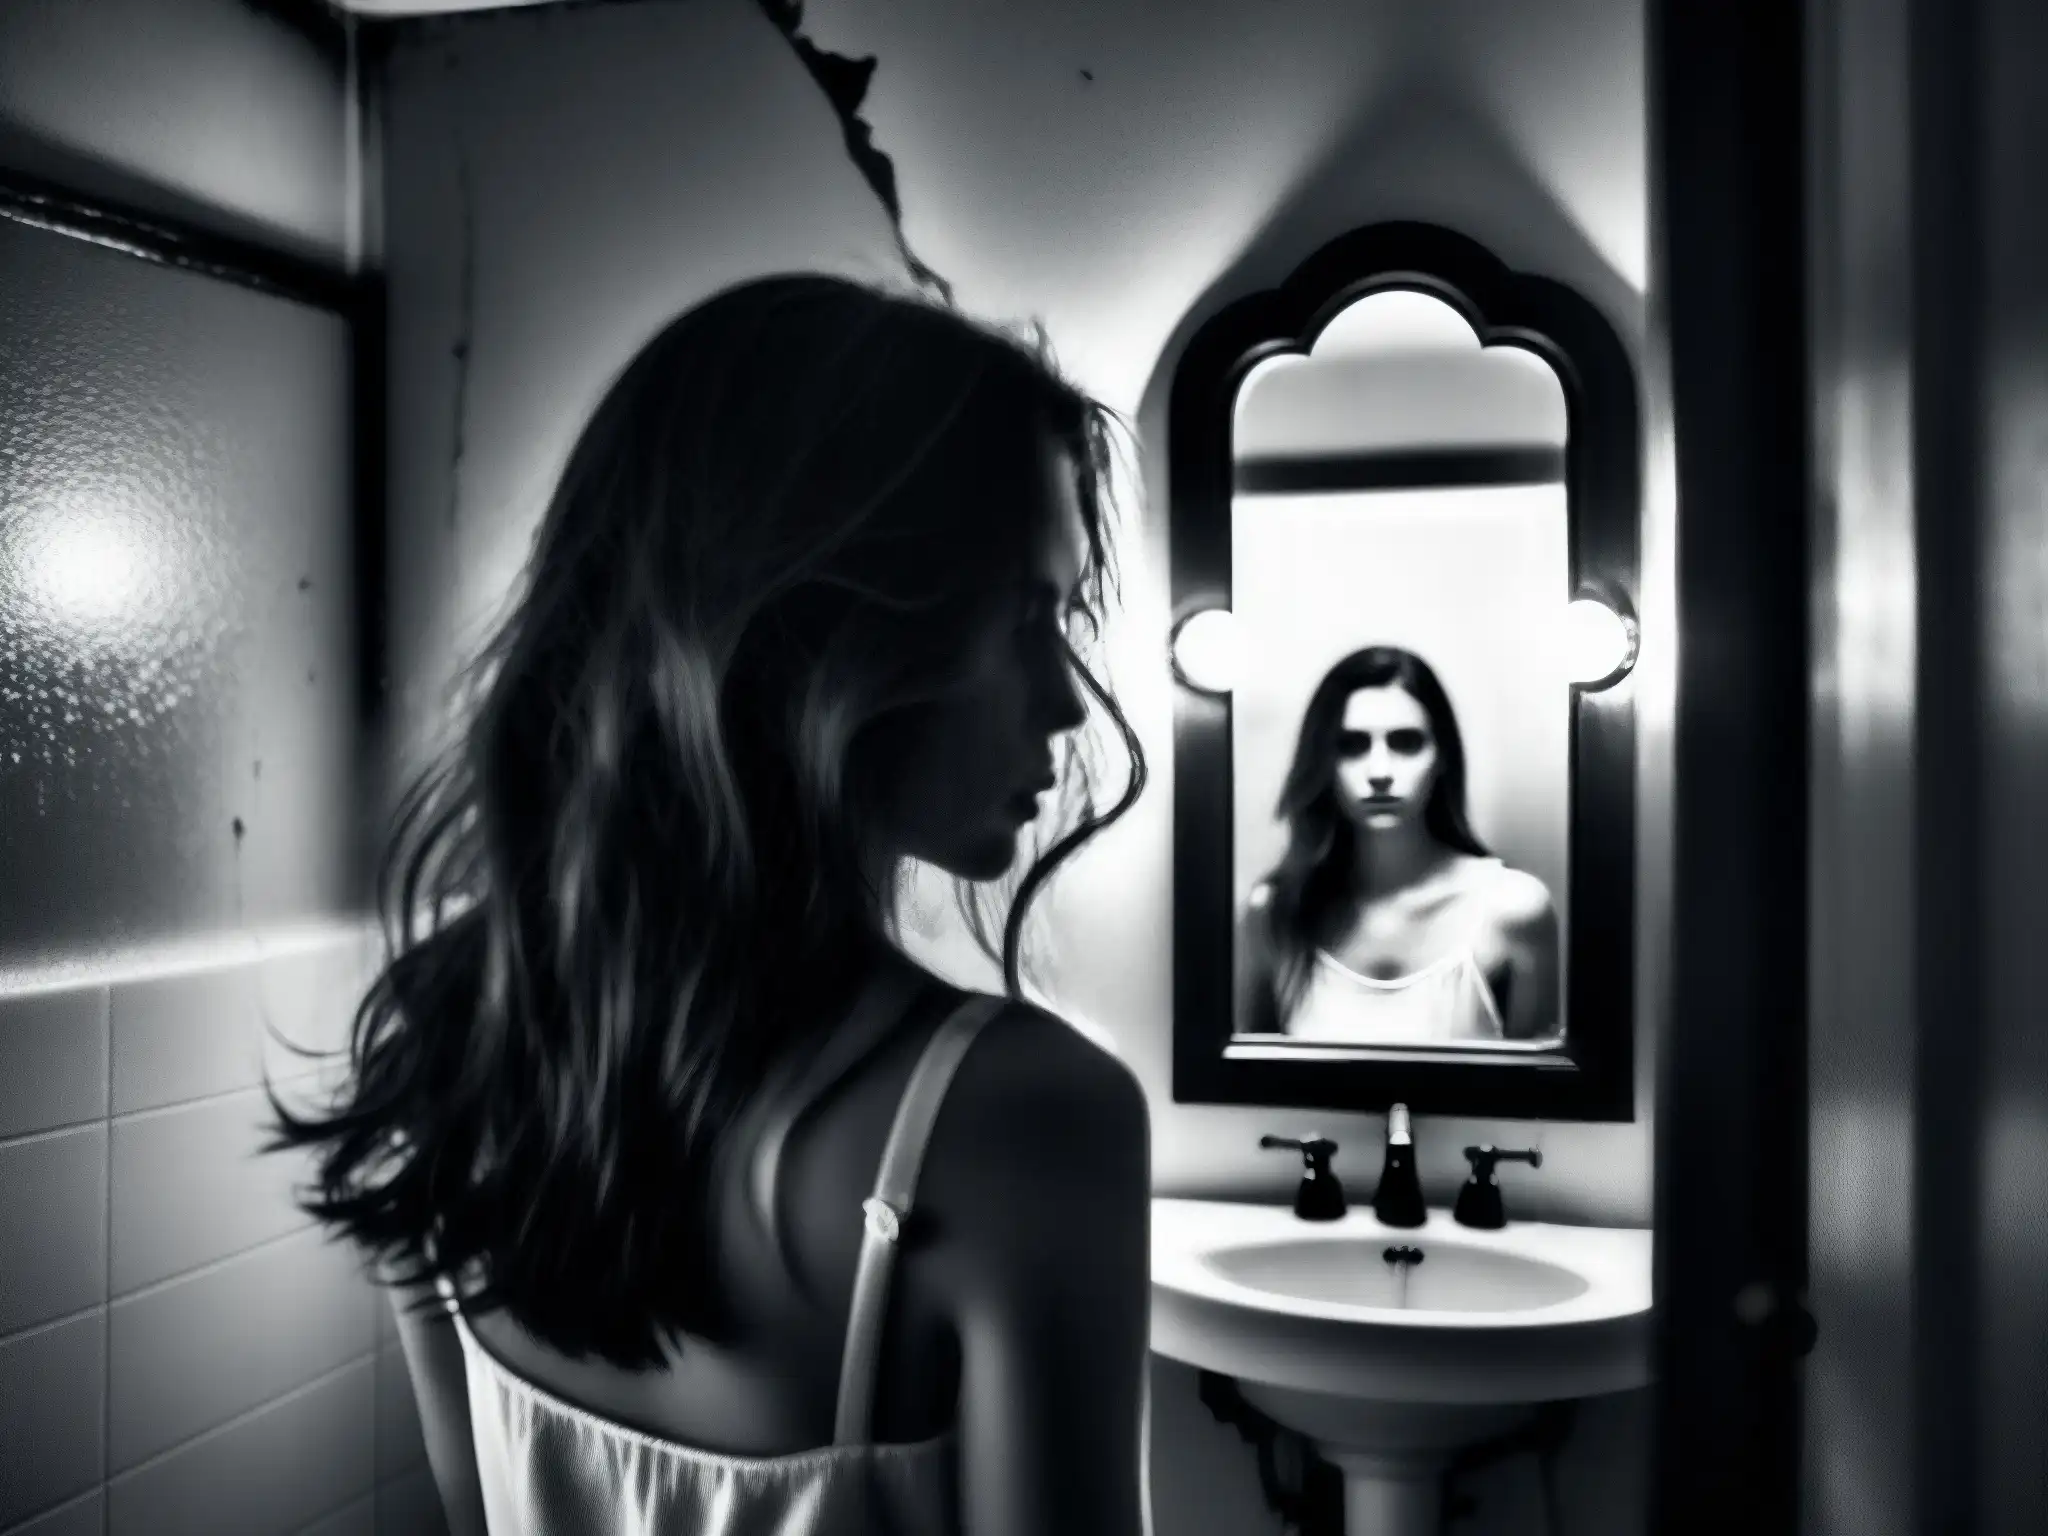 En la penumbra de un baño, un reflejo fantasmal en un espejo agrietado evoca la leyenda de Bloody Mary